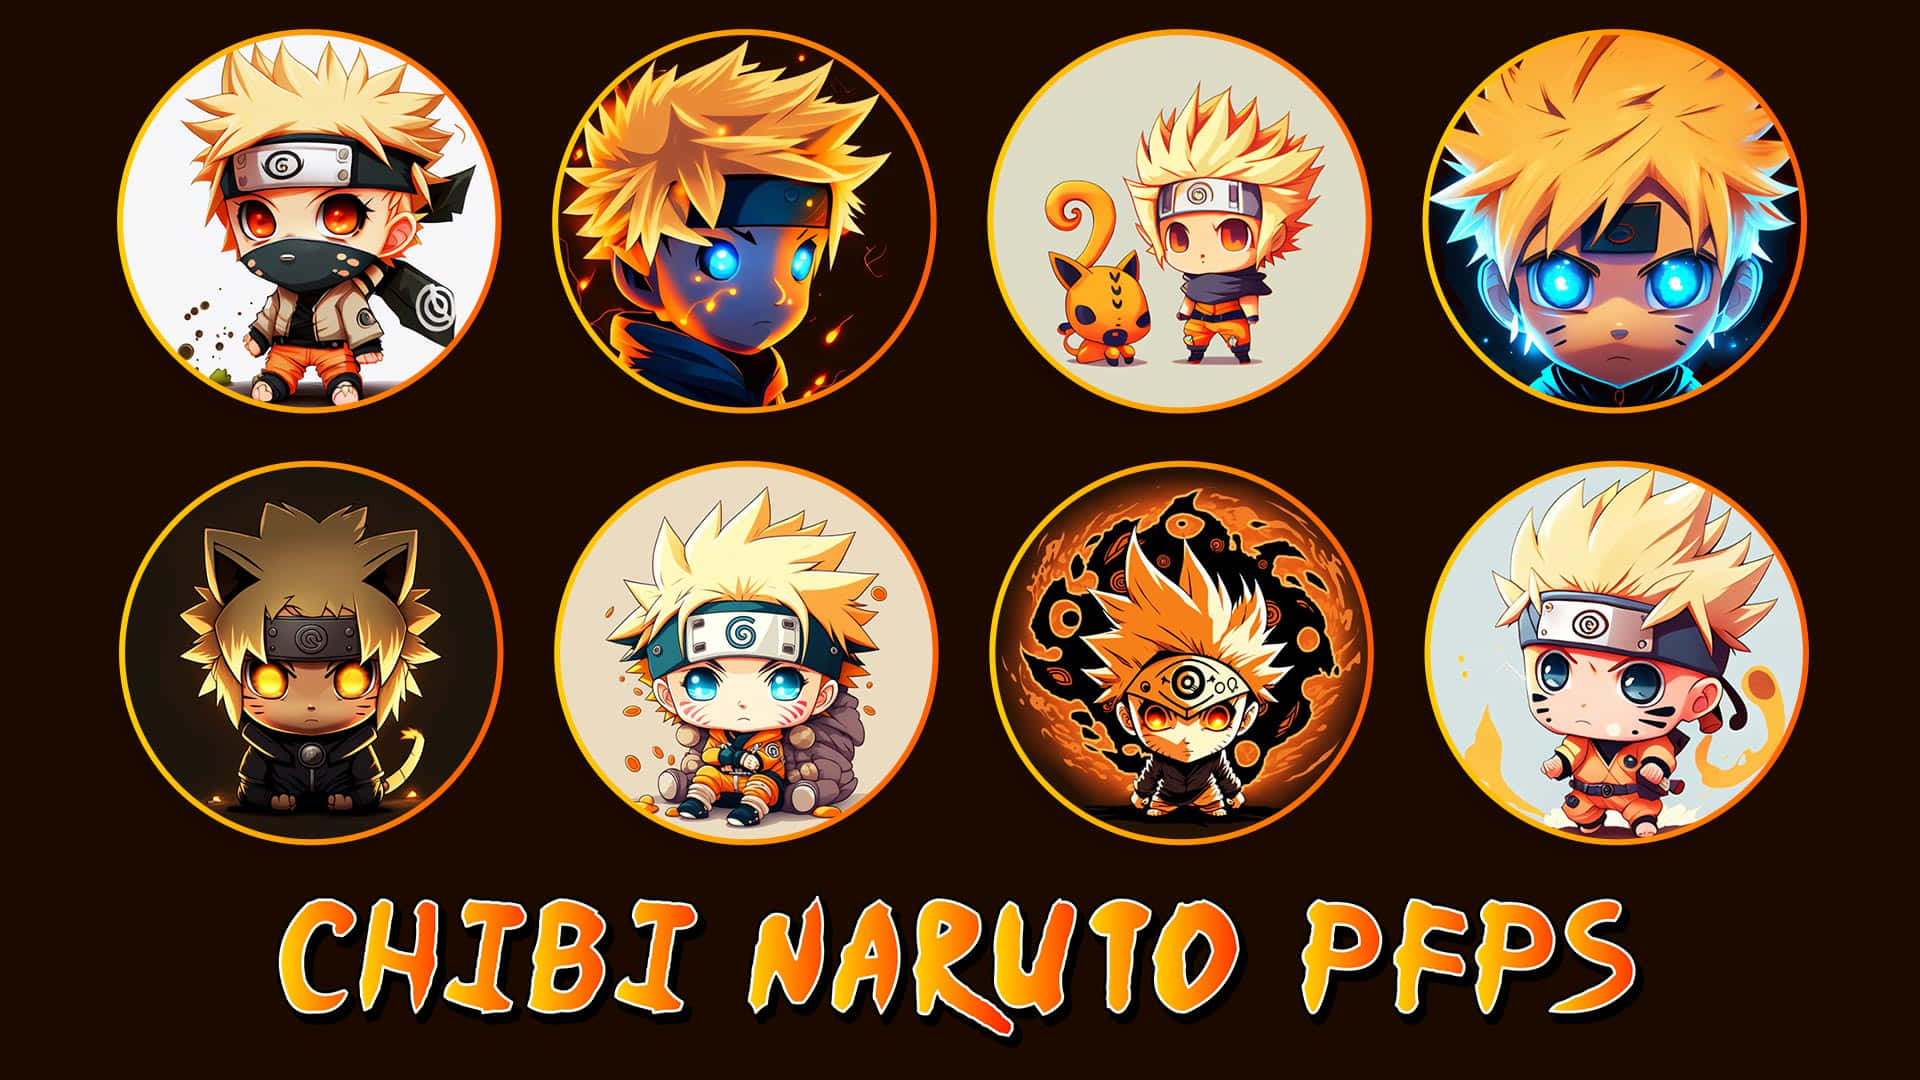 Nếu bạn là fan của Naruto và yêu thích phong cách chibi, hãy tải ngay bộ ảnh Naruto Chibi Wallpaper Download. Với độ phân giải cao, hình ảnh sắc nét, bạn sẽ có những chiếc điện thoại đẹp và độc đáo nhất.